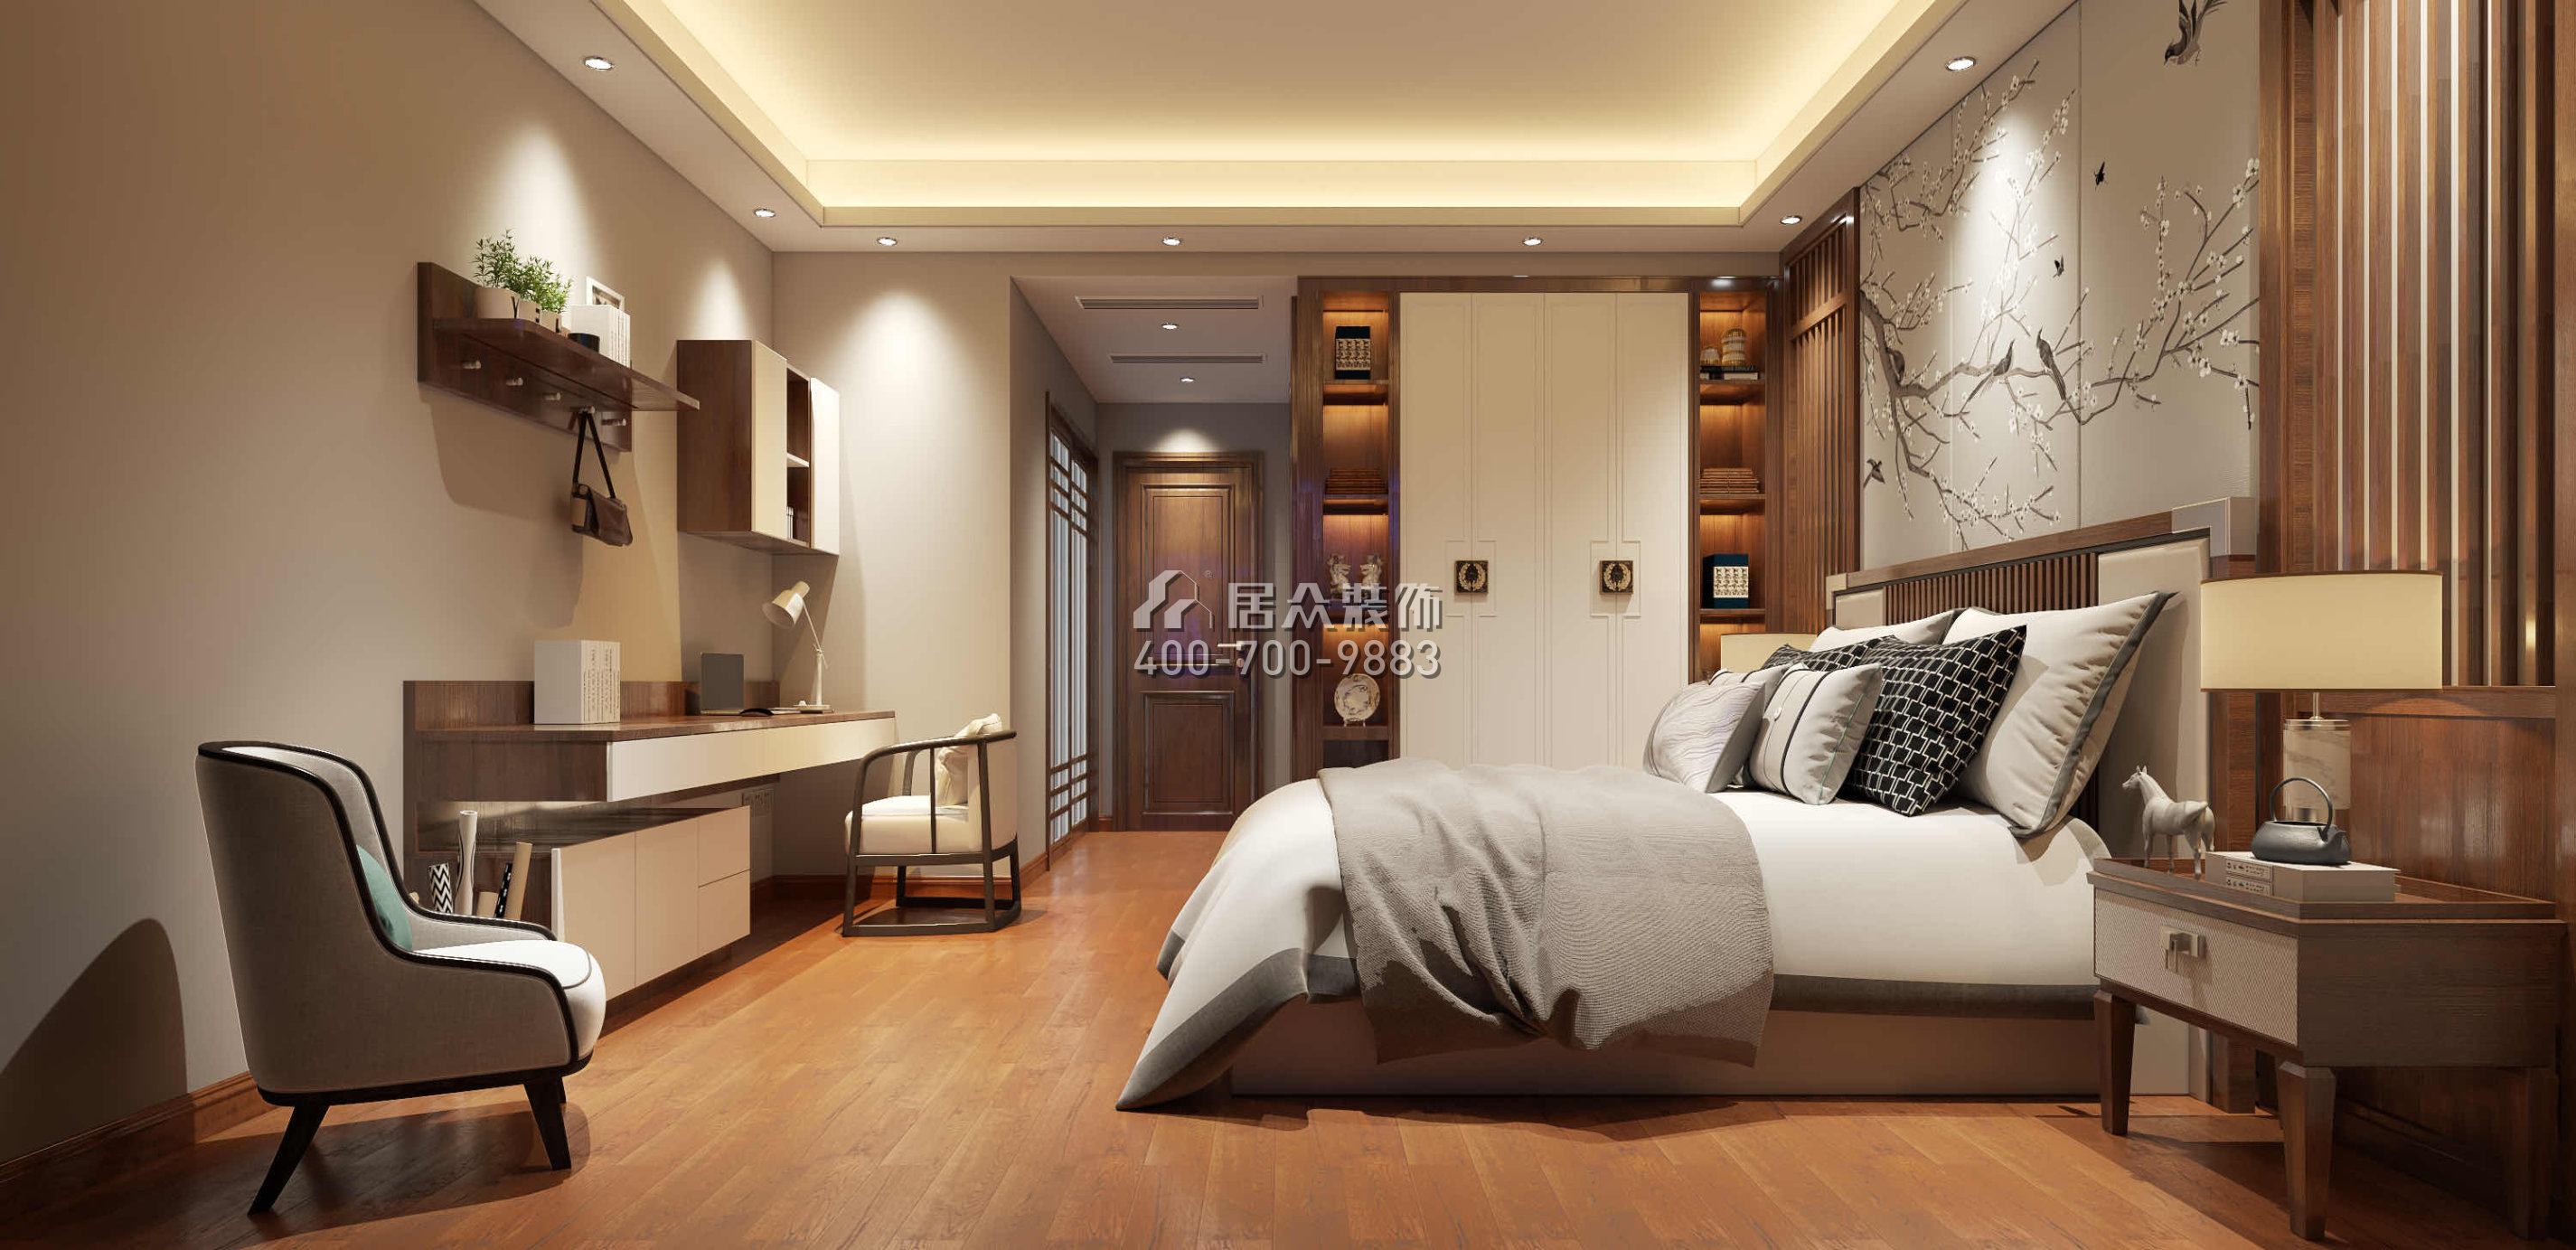 華發峰景灣216平方米中式風格平層戶型臥室裝修效果圖